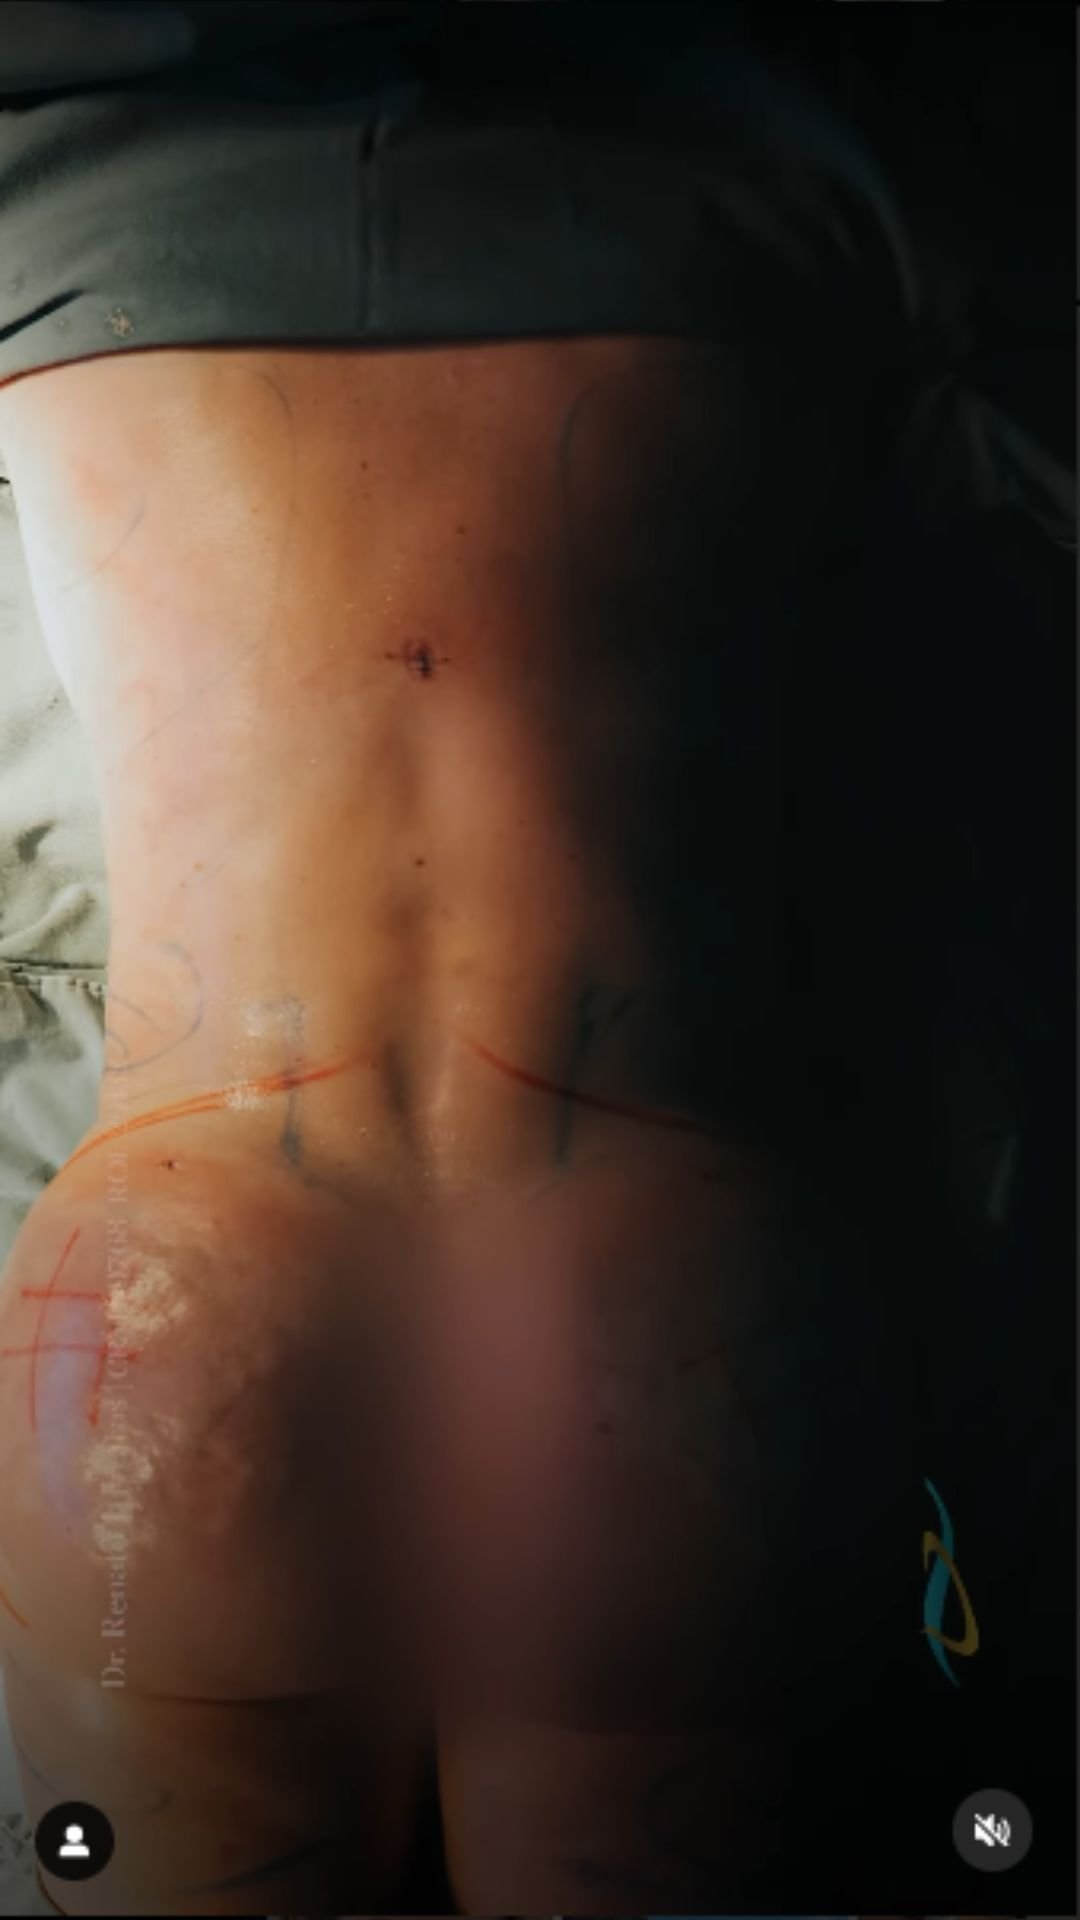 Modelo mostra cicatrizes após mamoplastia, abdominoplastia e lipoaspiração Instagram